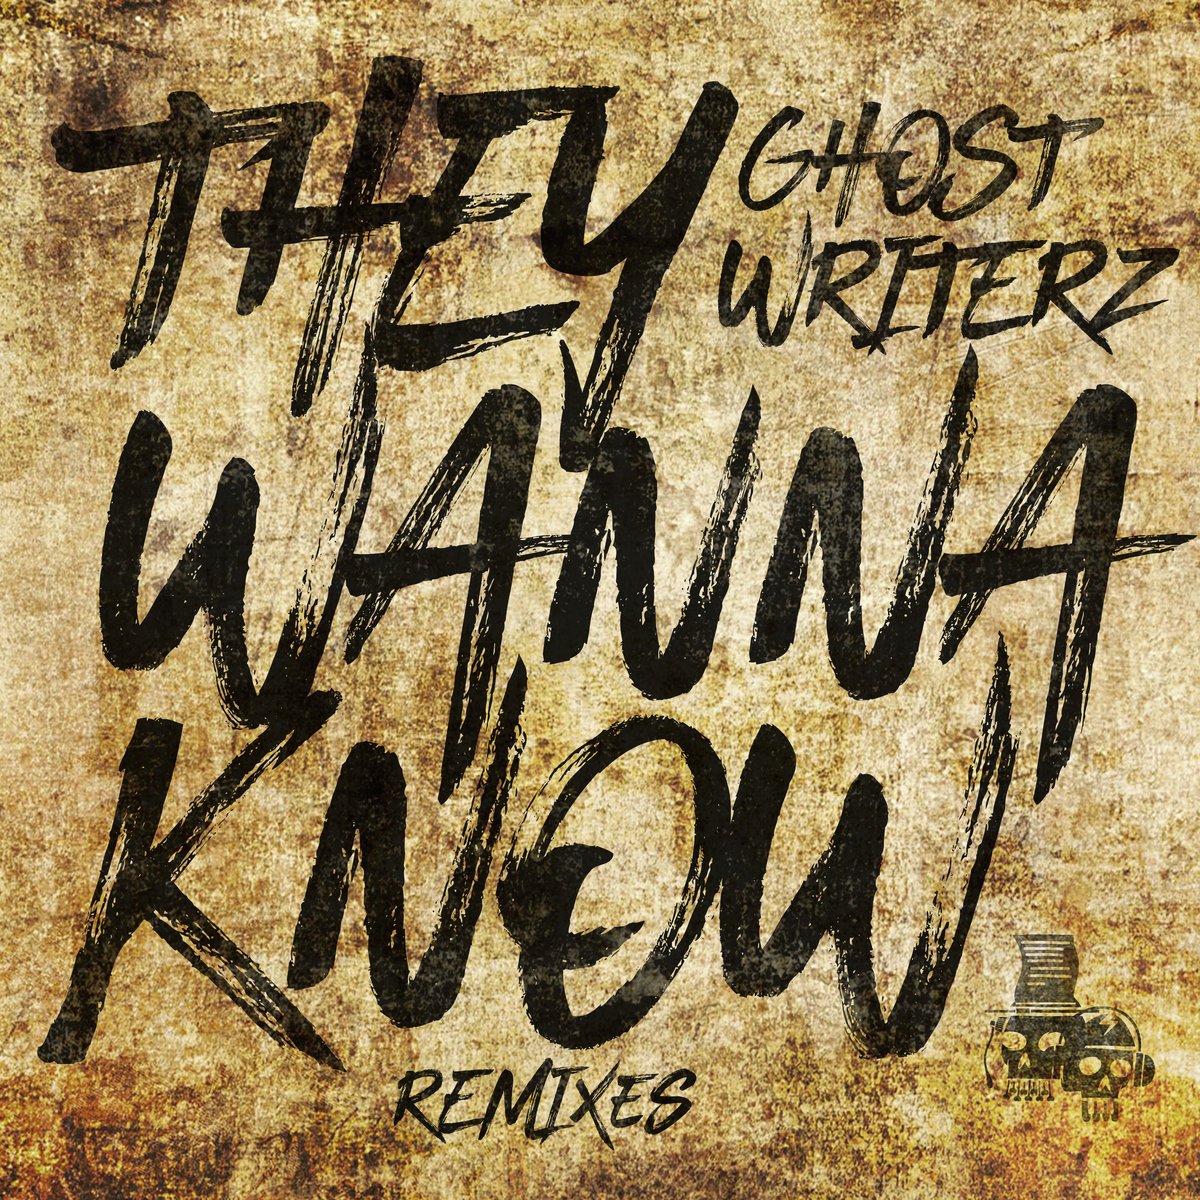 They Wanna Know (Kursiva Remix) by: Ghost Writerz